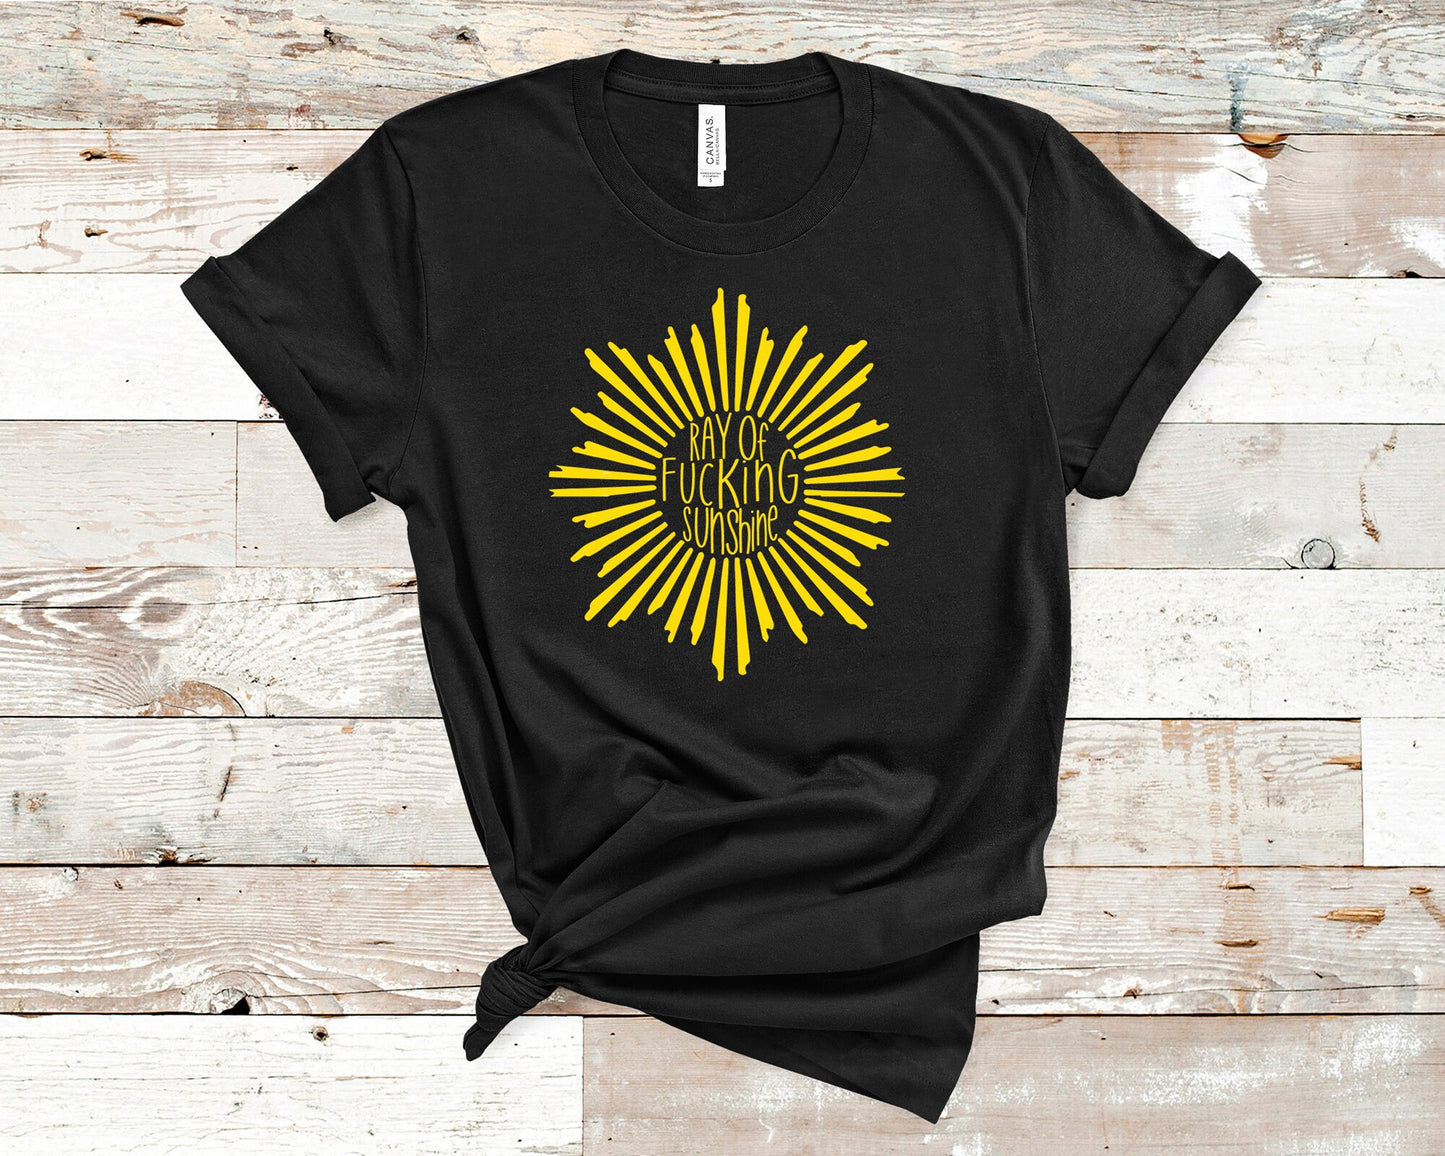 Ray of Fucking Sunshine- Adult T-shirt- Unisex Adults